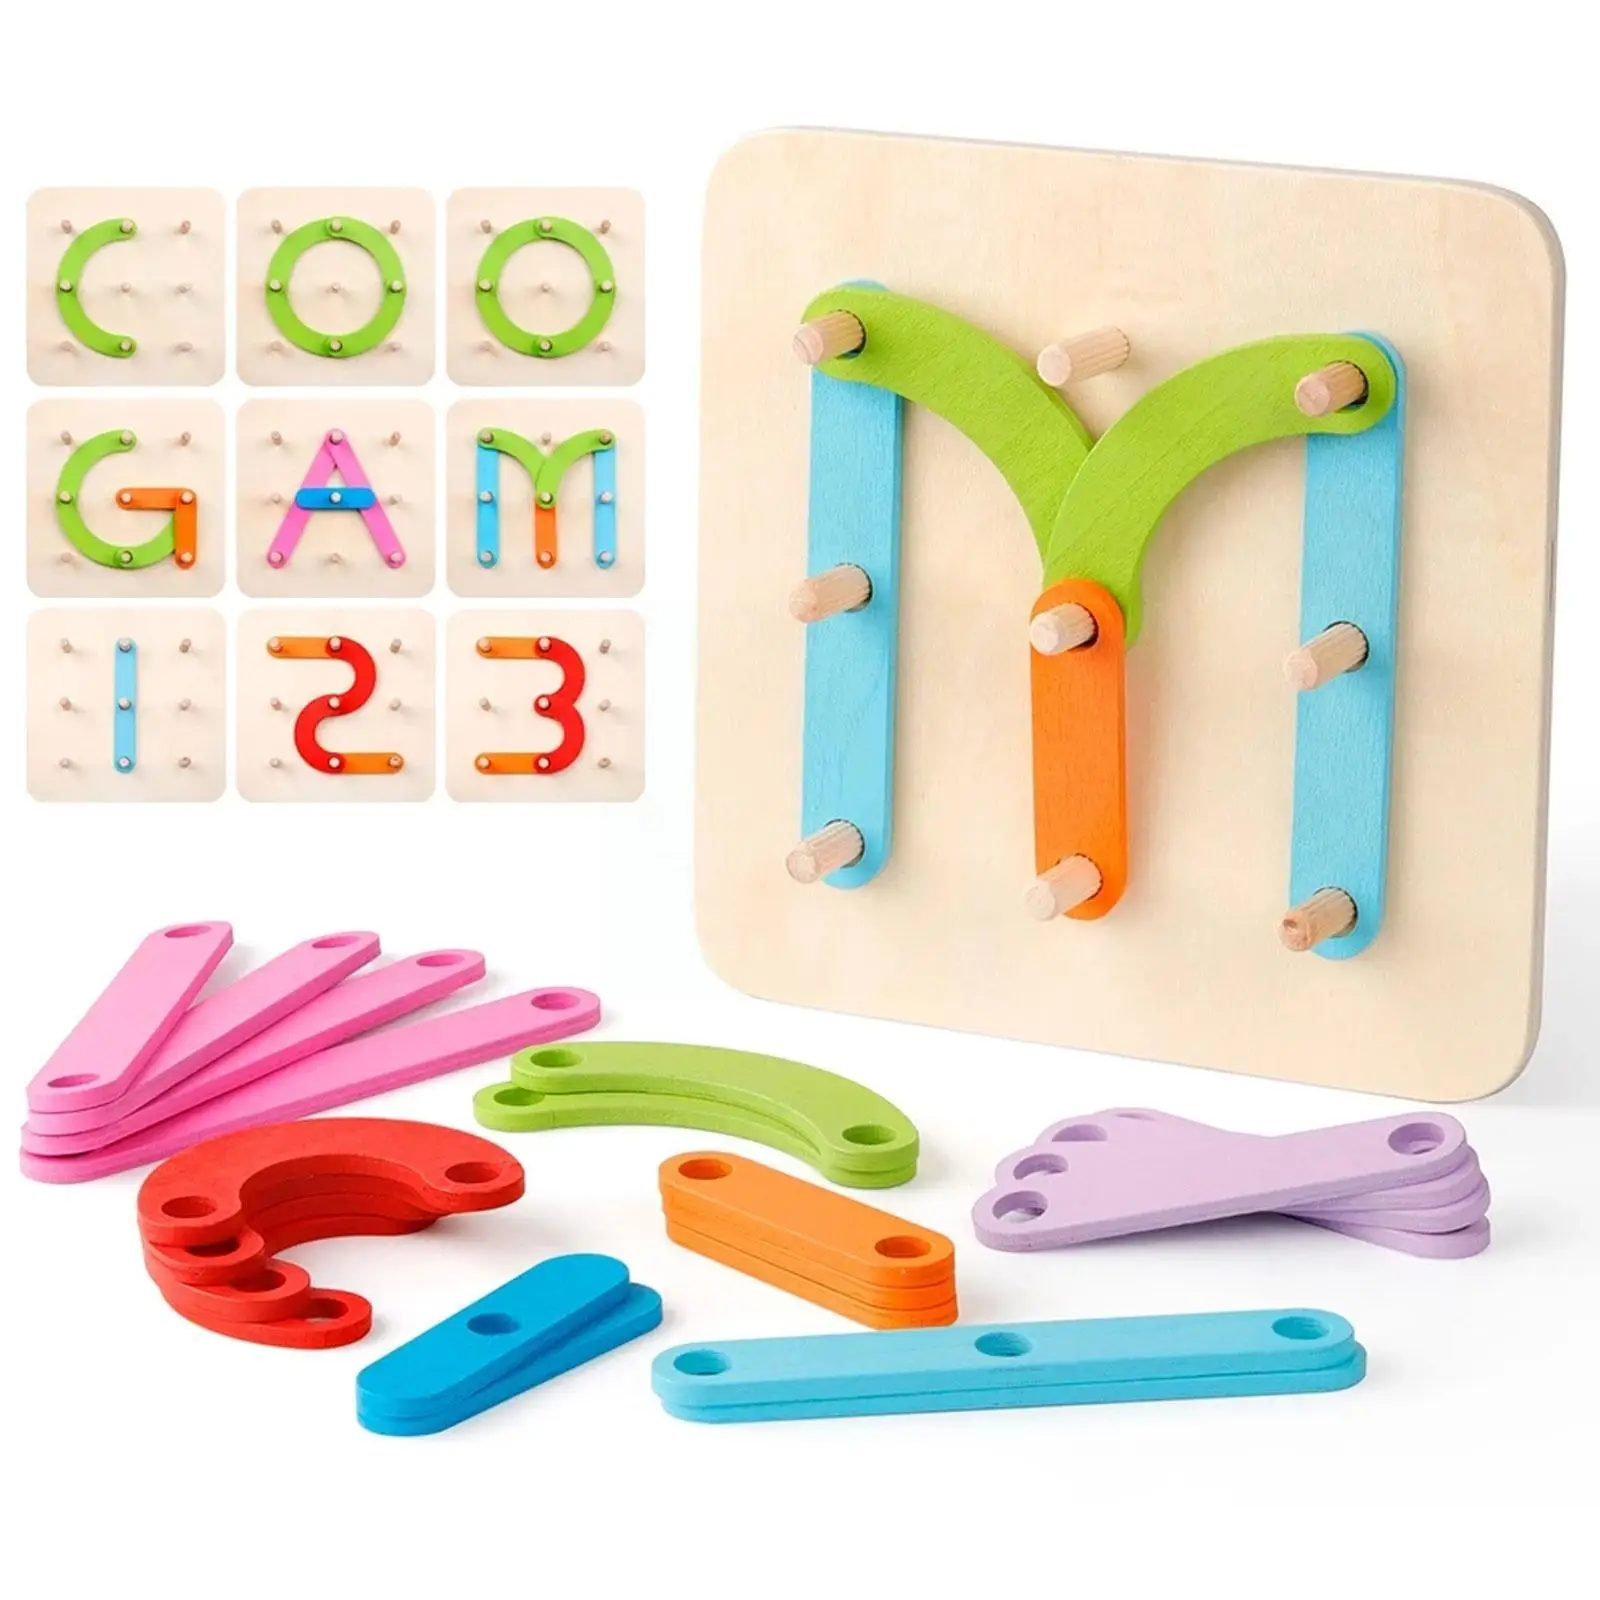 

Набор геометрических пазлов для детей, Развивающие деревянные игрушки, китайские буквы алфавита, геодоска, форма пазла, игрушки, животные, цифры, G X5o7